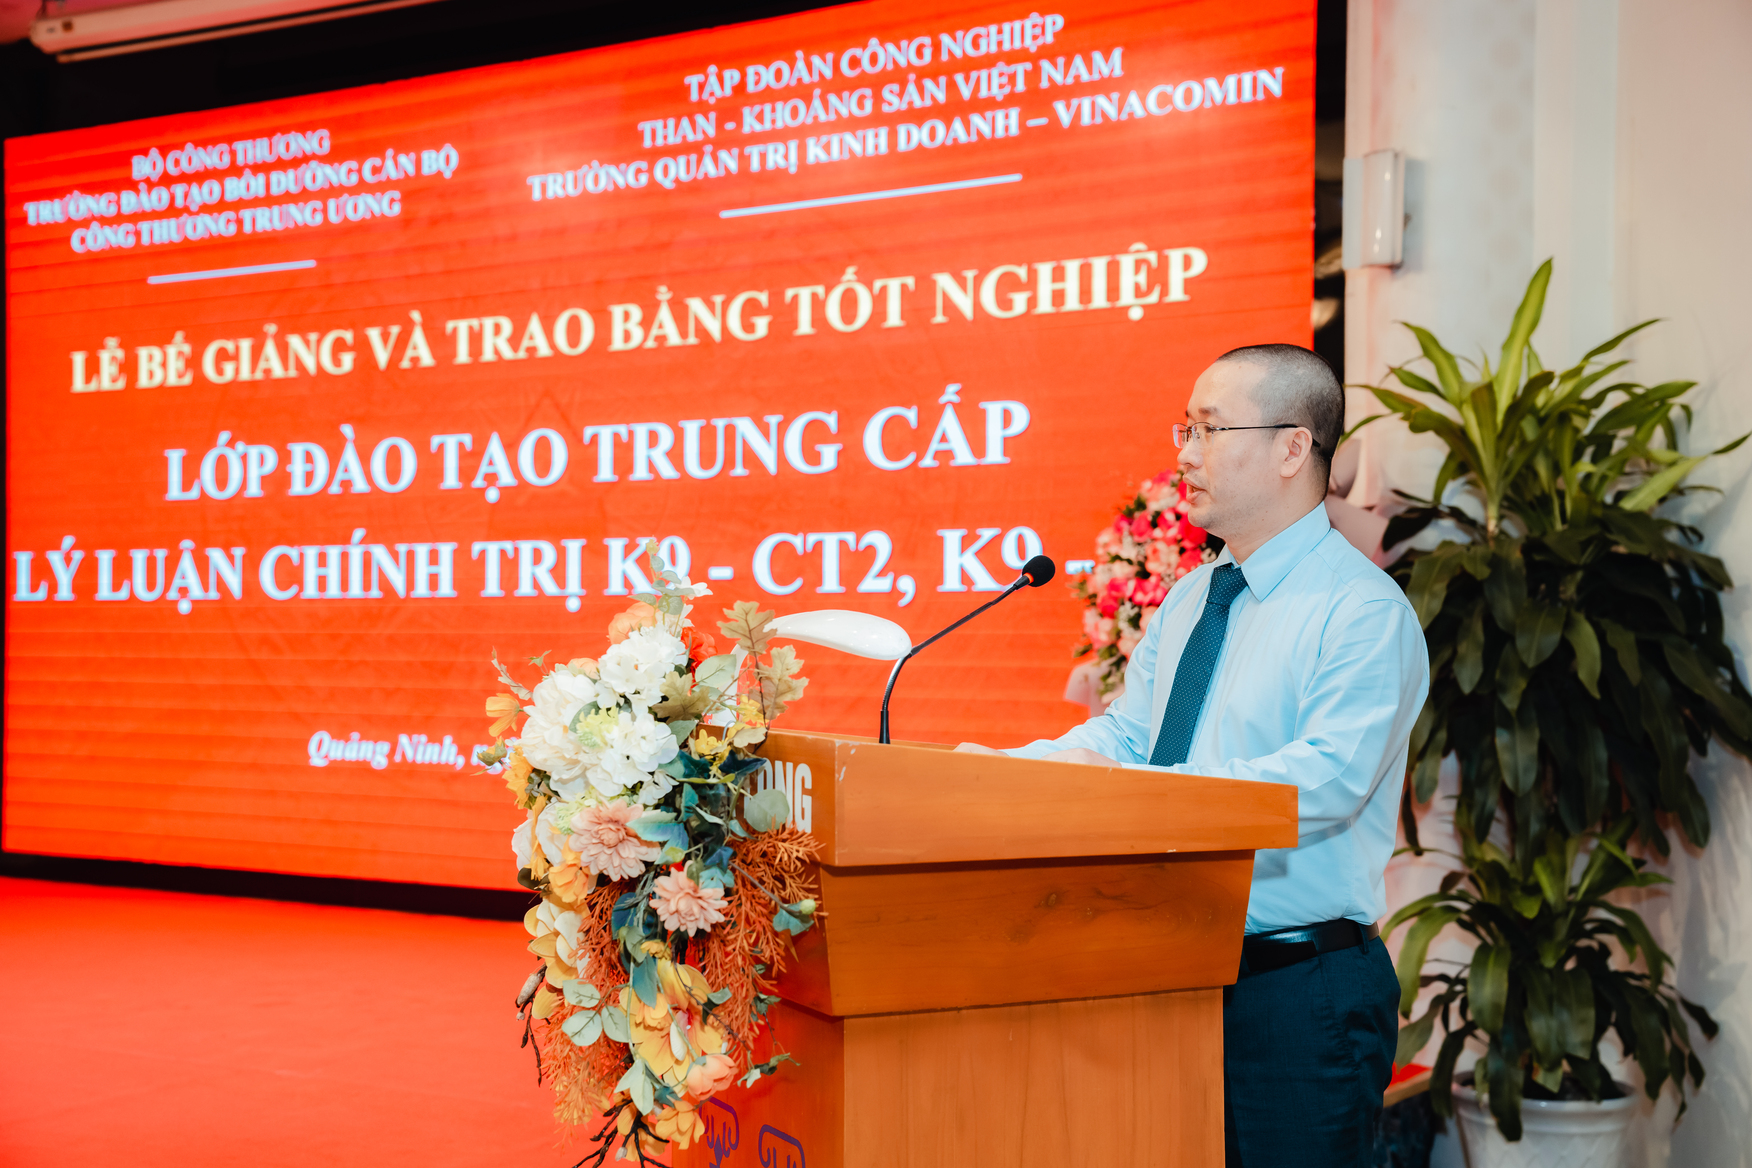 Đồng chí Nguyễn Văn Cương - Phó Trưởng ban đầu tư - Tập đoàn CN Than Khoáng sản Việt Nam - Lớp Trưởng đại diện học viên lên phát biểu.